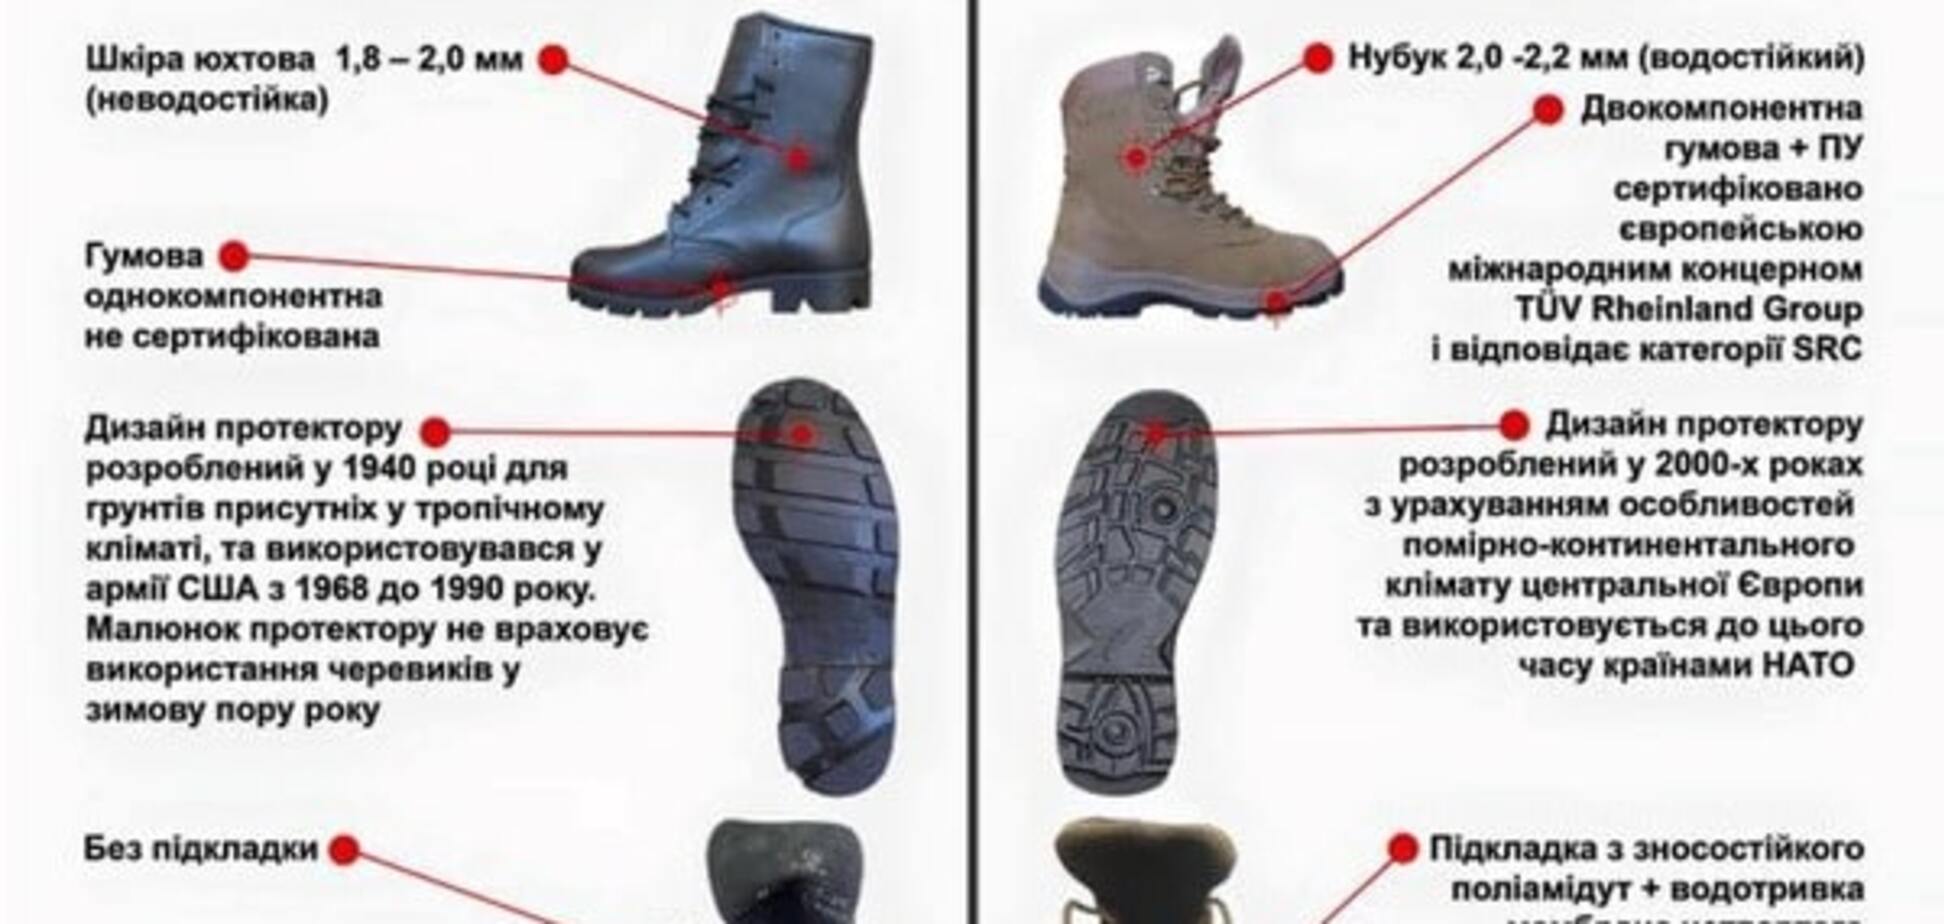 Бирюков показал, во что обули украинских военных: инфографика